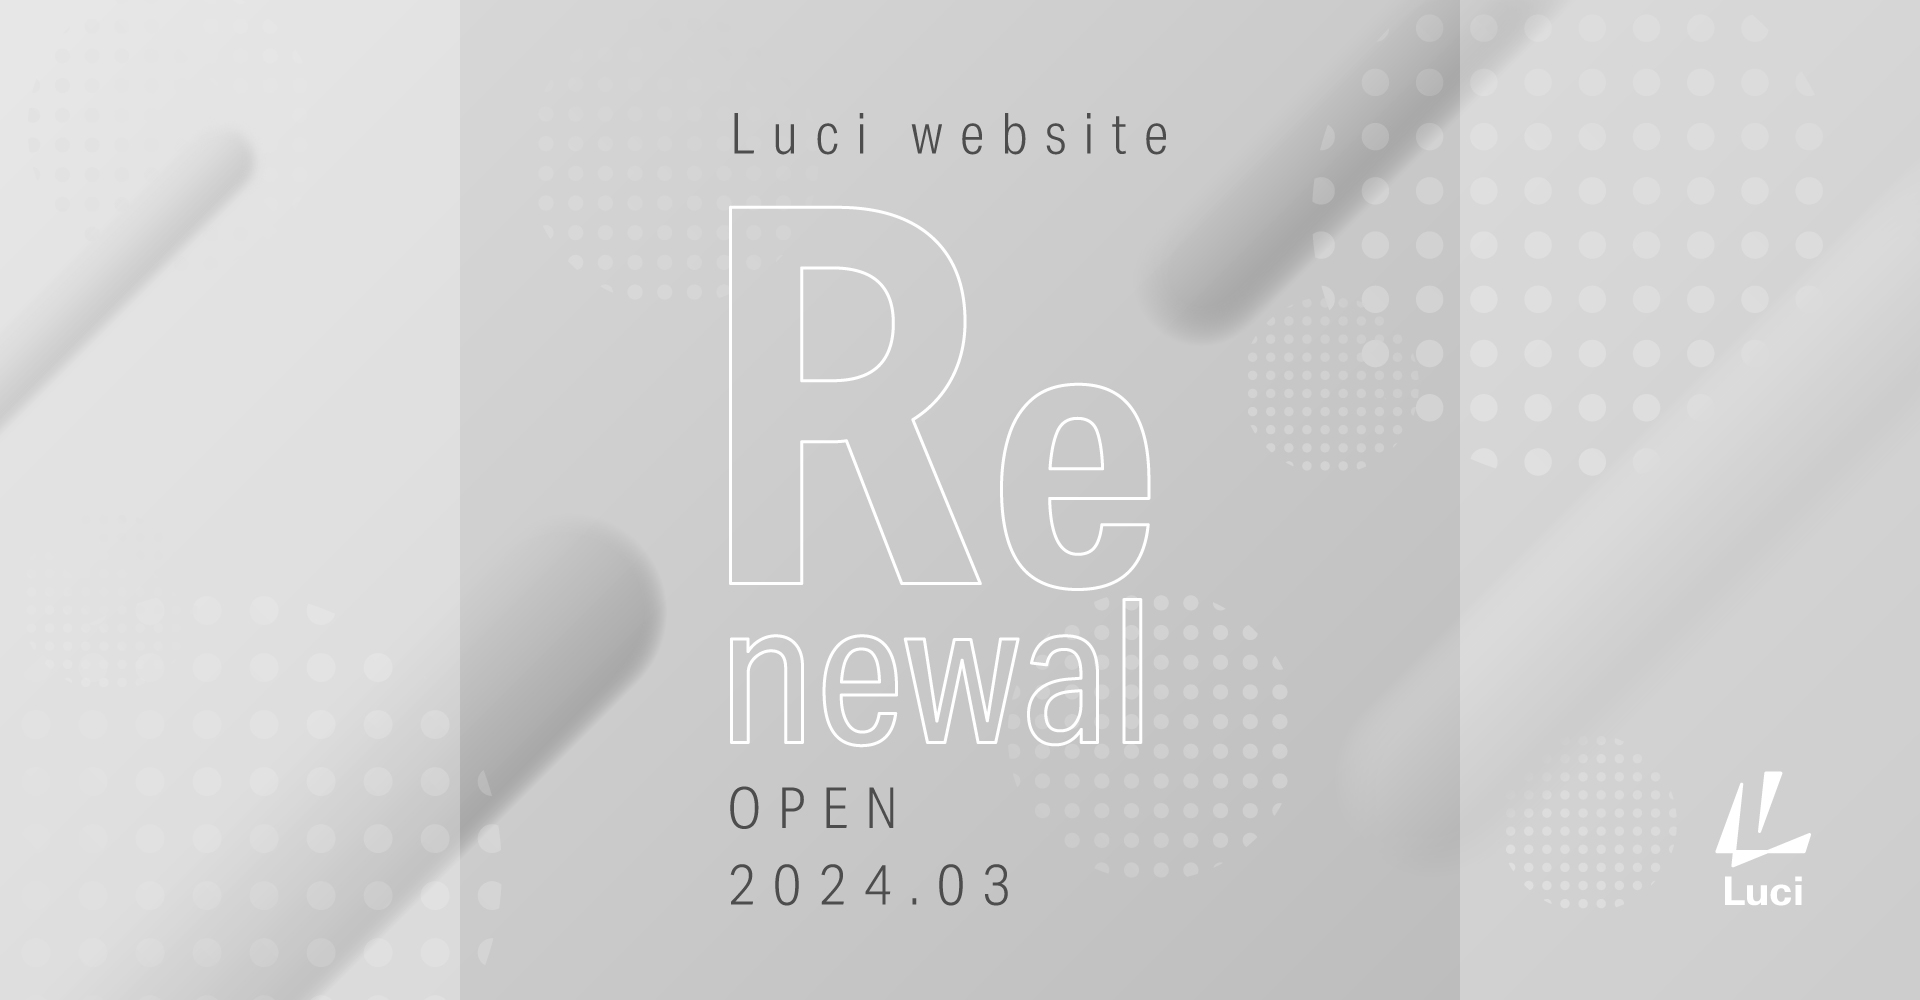 led_website_renewal-top